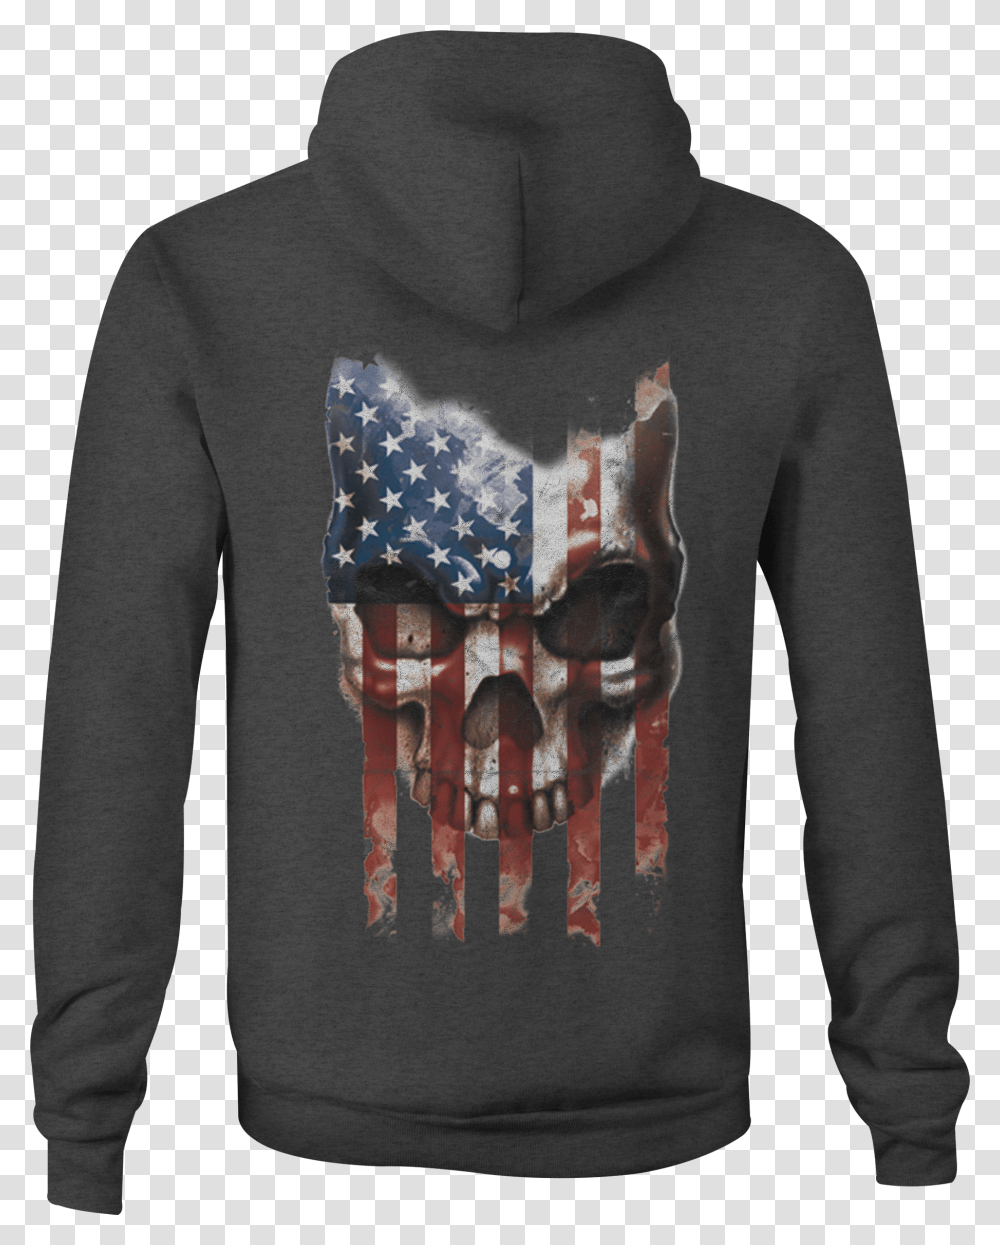 Zip Up Hoodie American Flag Vintage Skull Military, Apparel, Sleeve, Long Sleeve Transparent Png